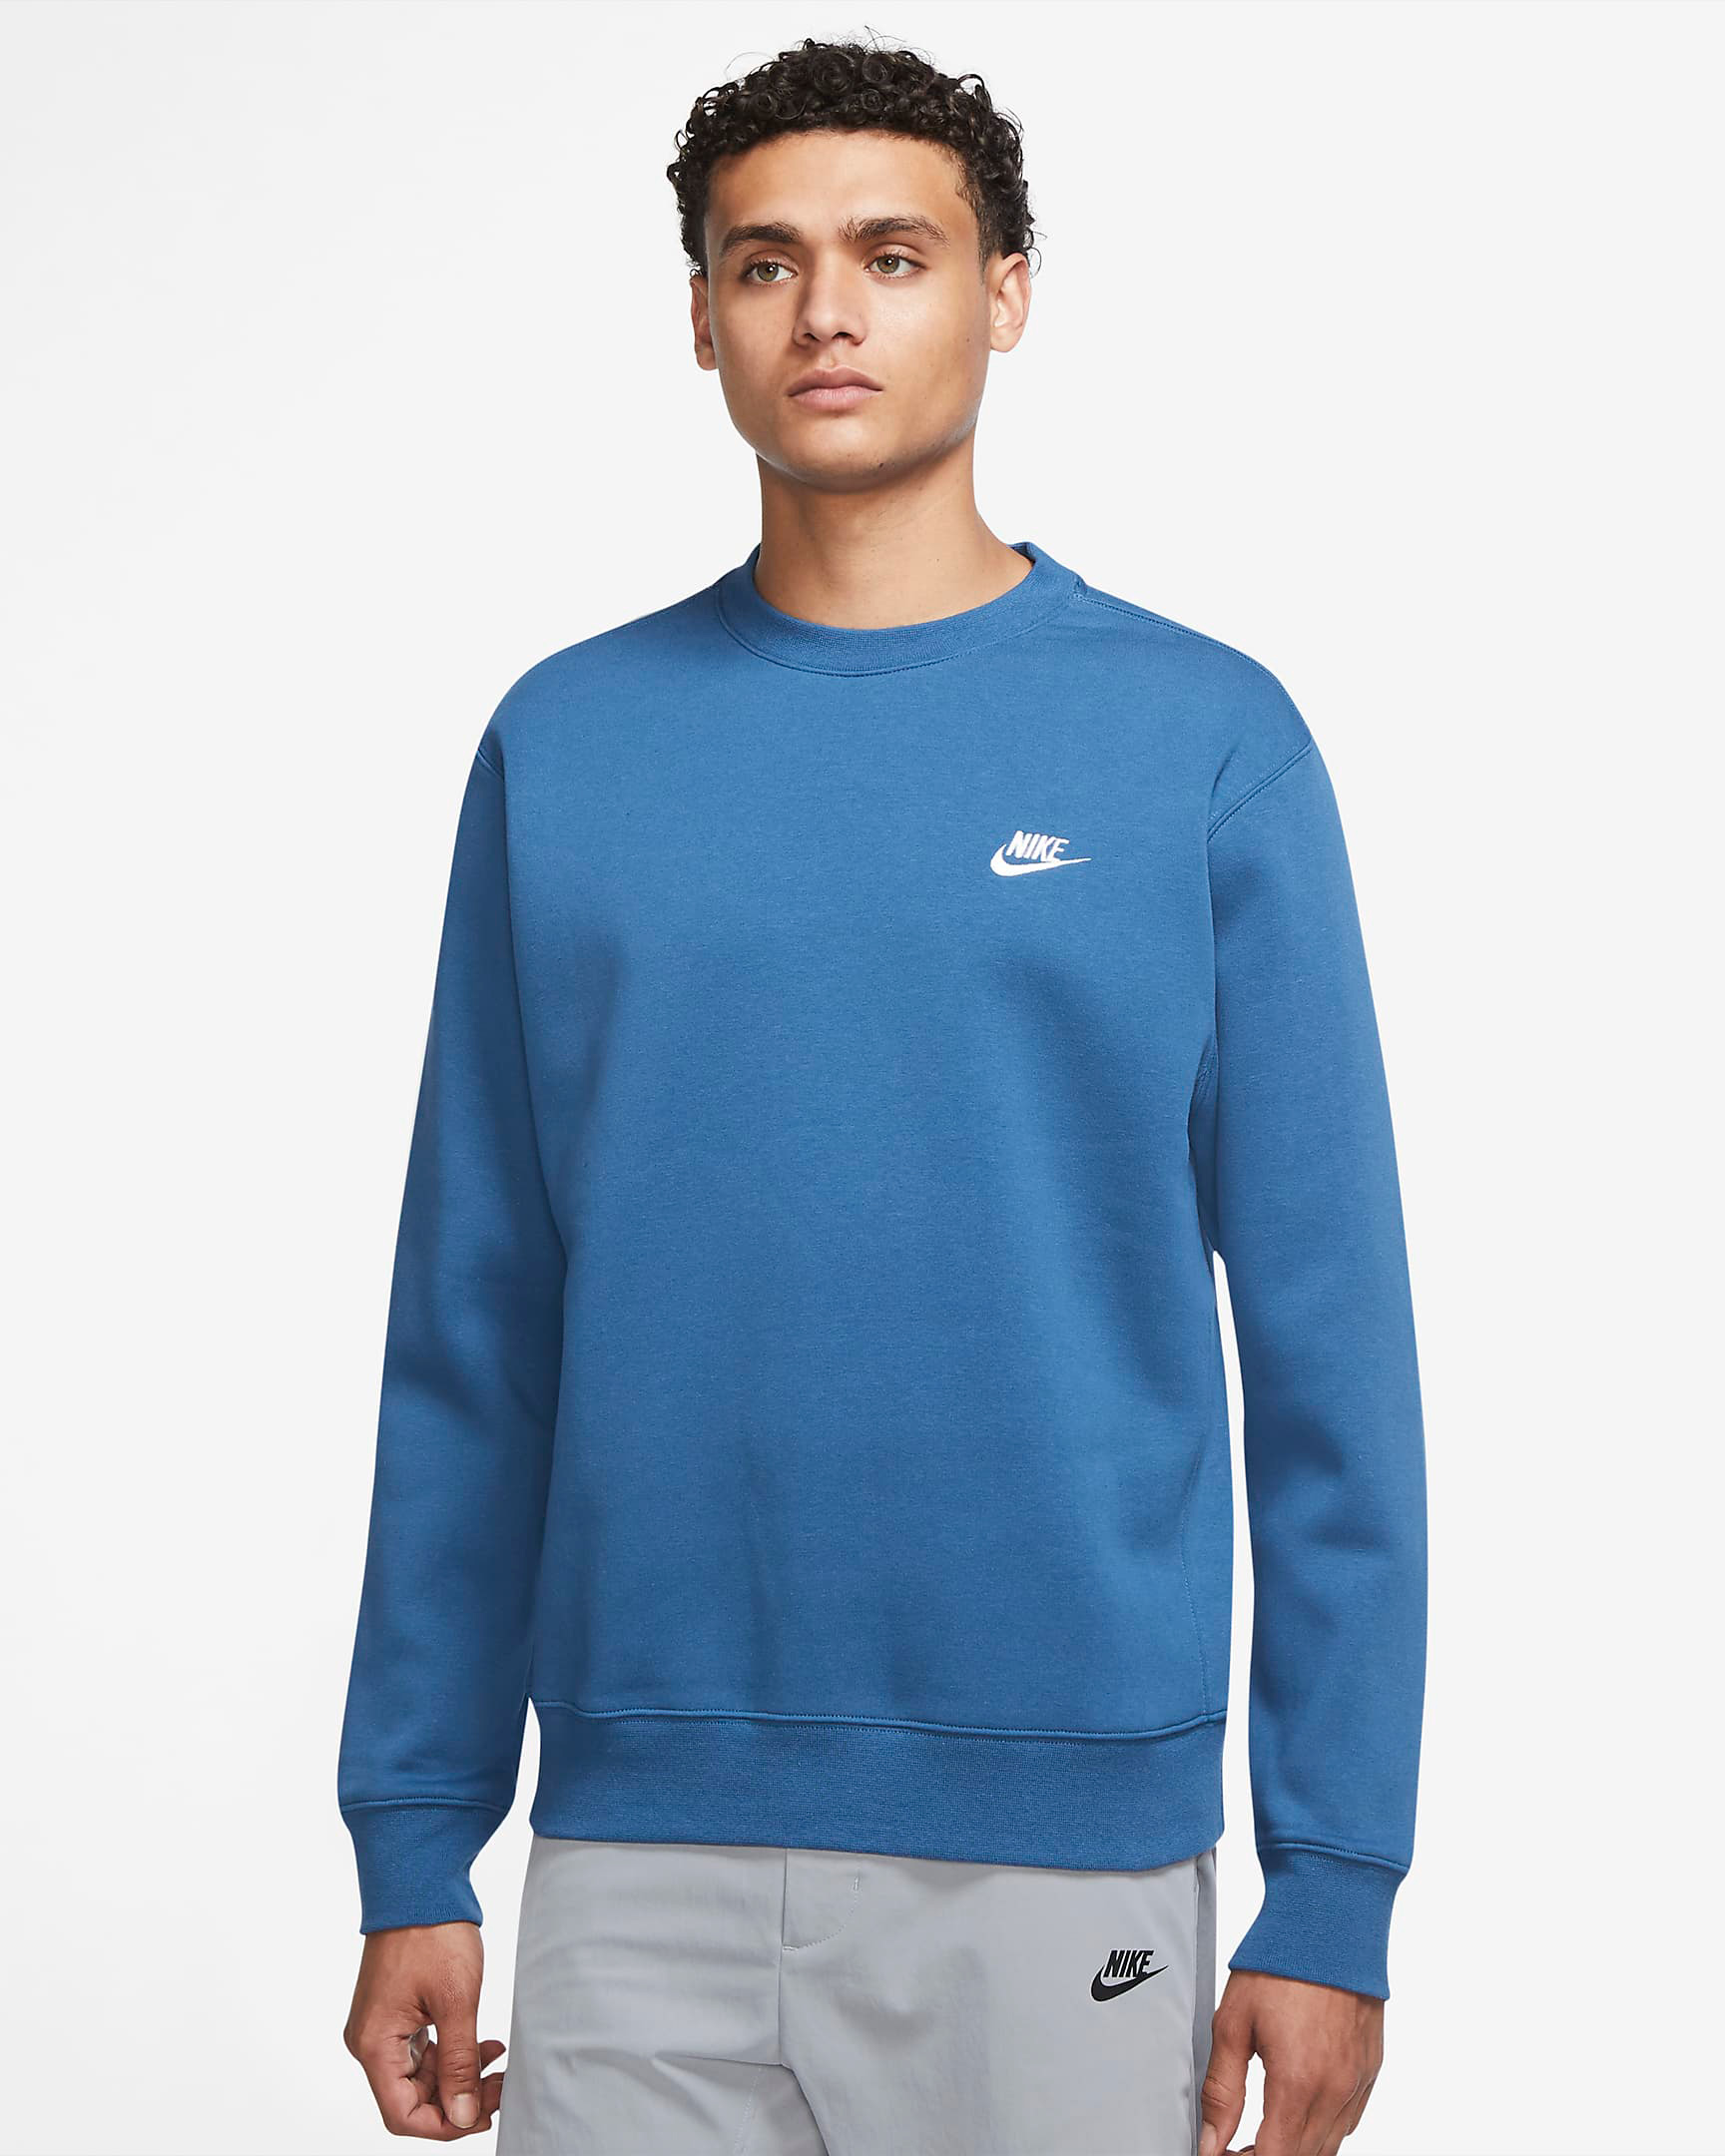 nike-dark-marina-blue-club-fleece-crew-sweatshirt